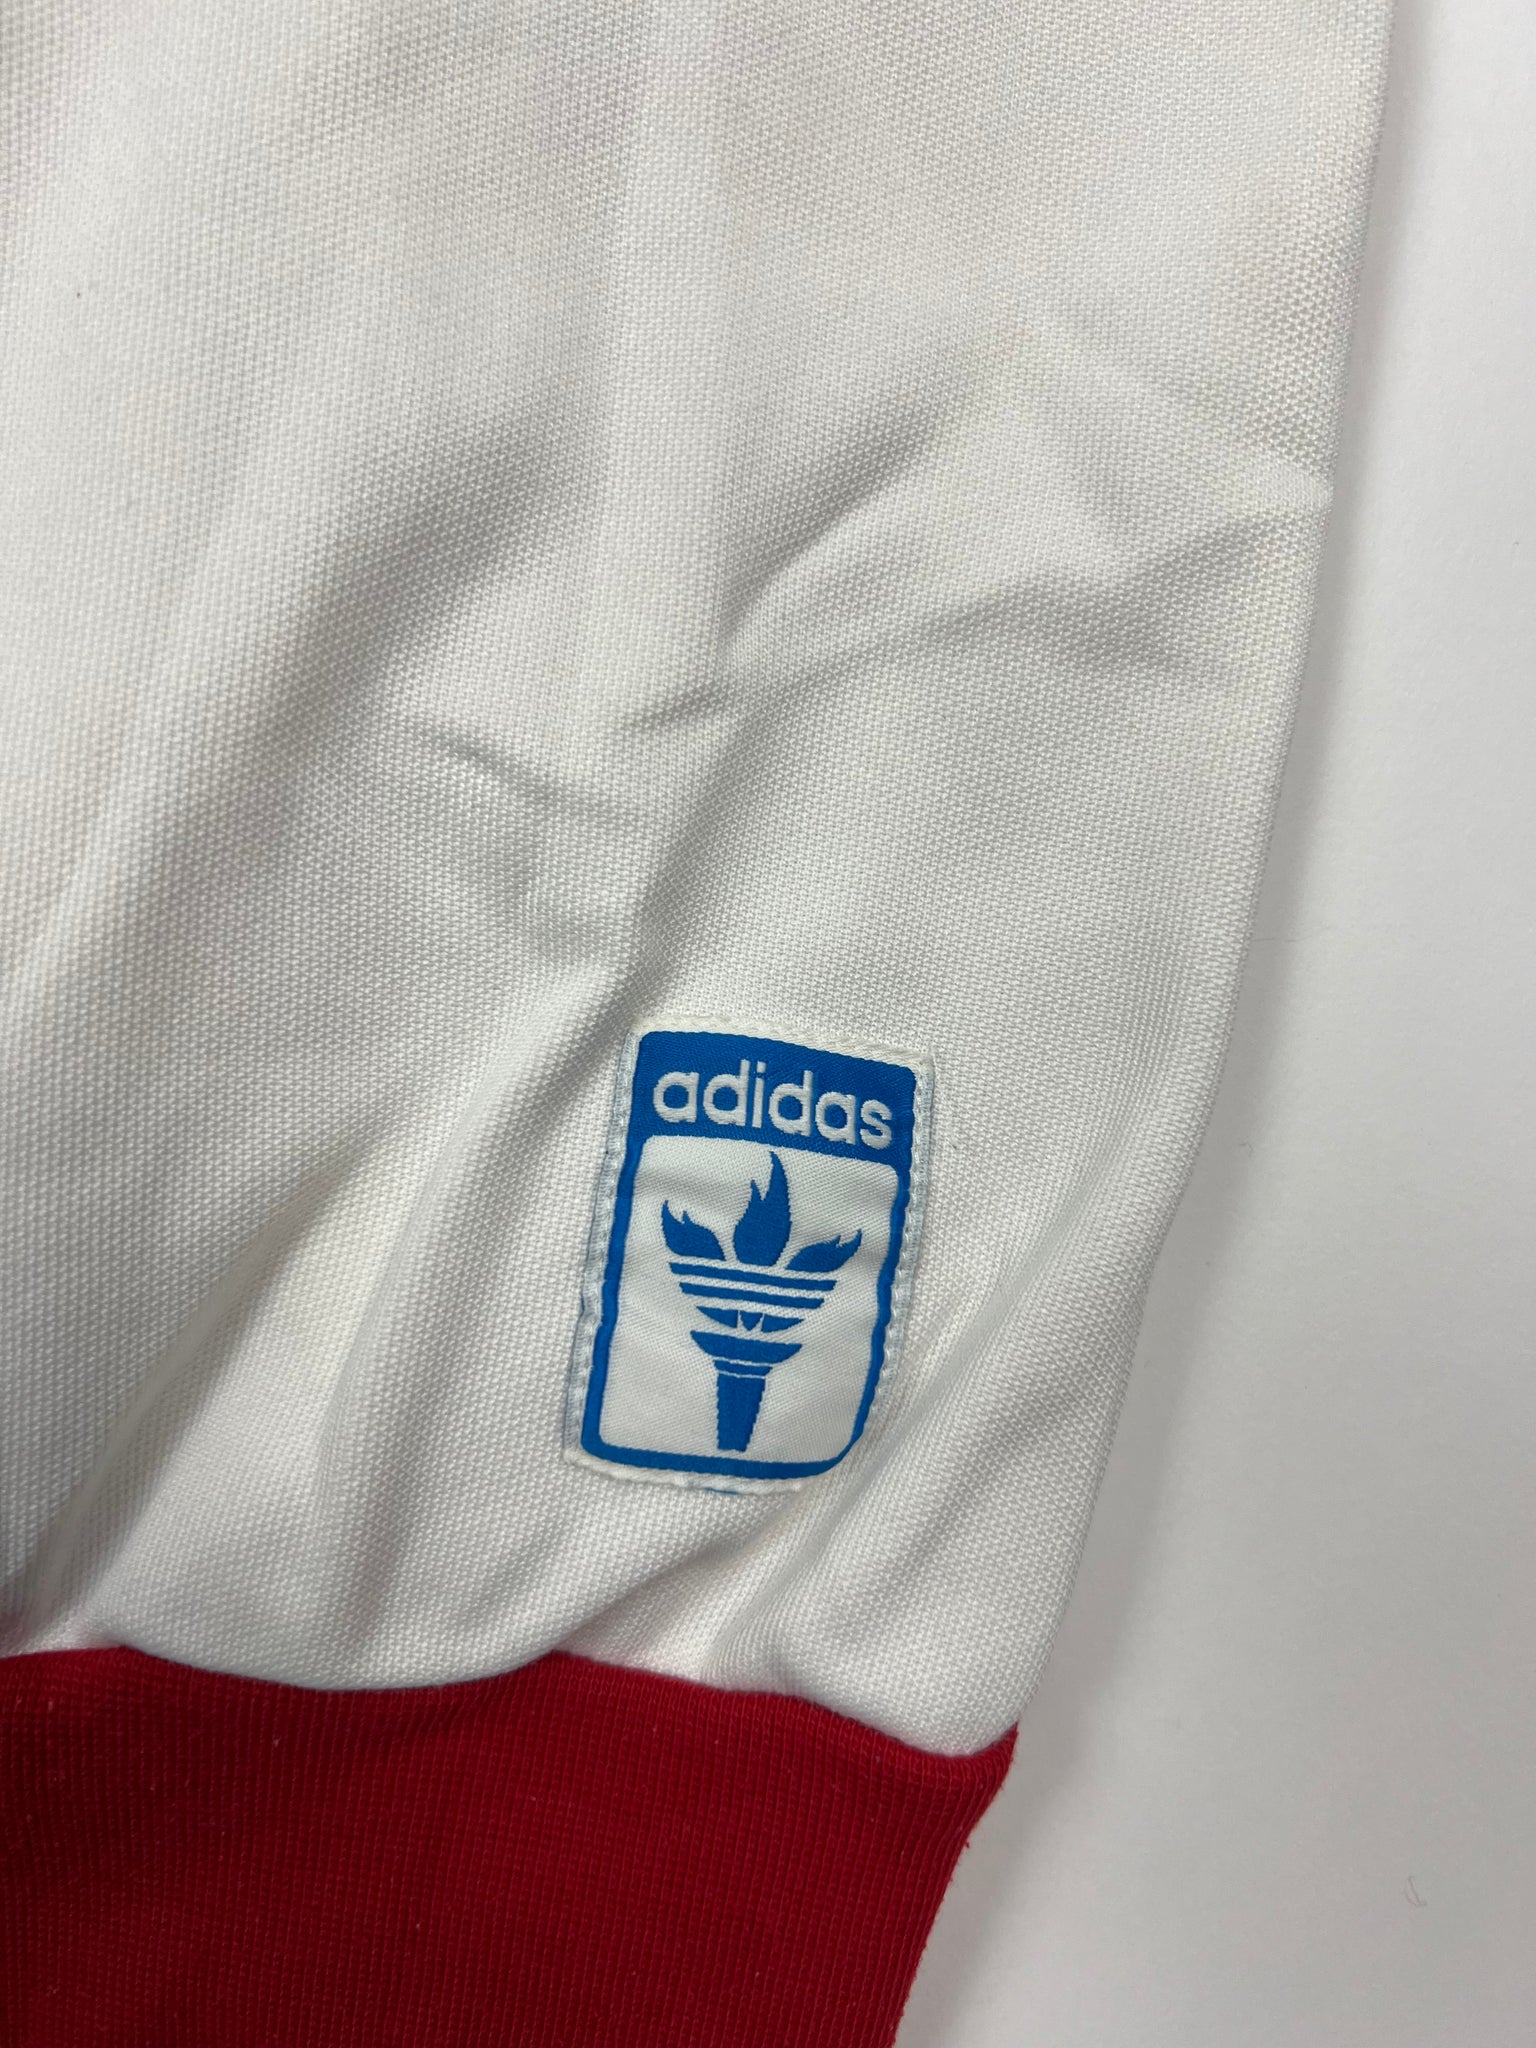 Adidas Japan Zip Up (M)